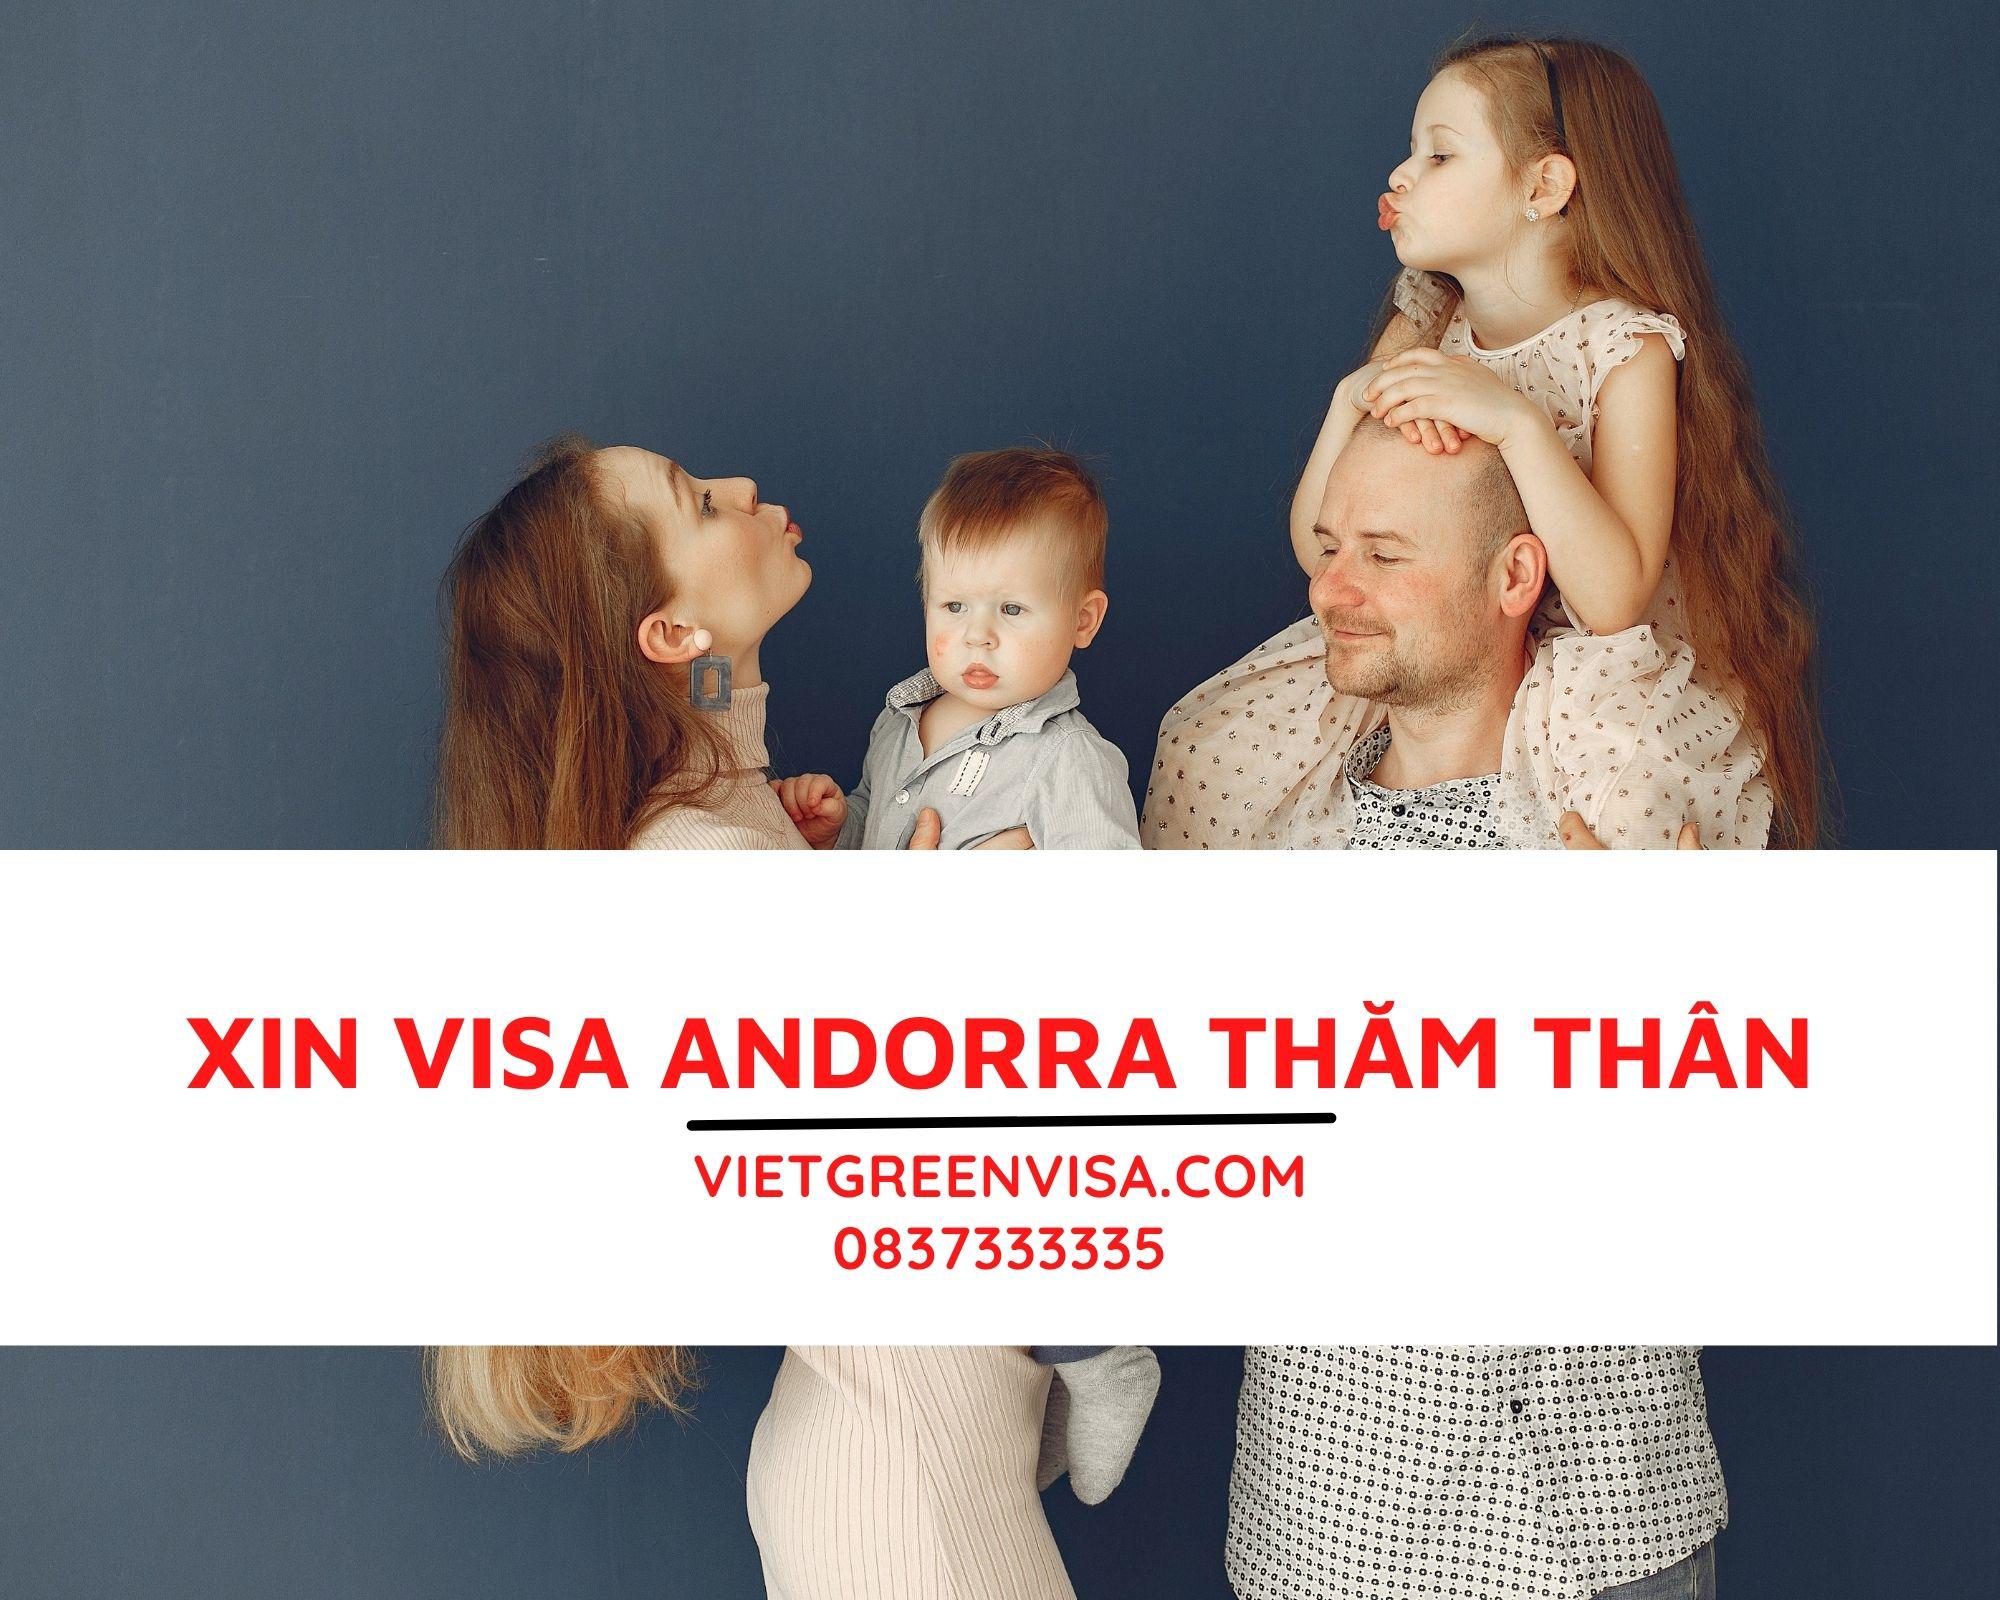 Gói dịch vụ xin visa Andorra thăm thân, hỗ trợ bảo hiểm